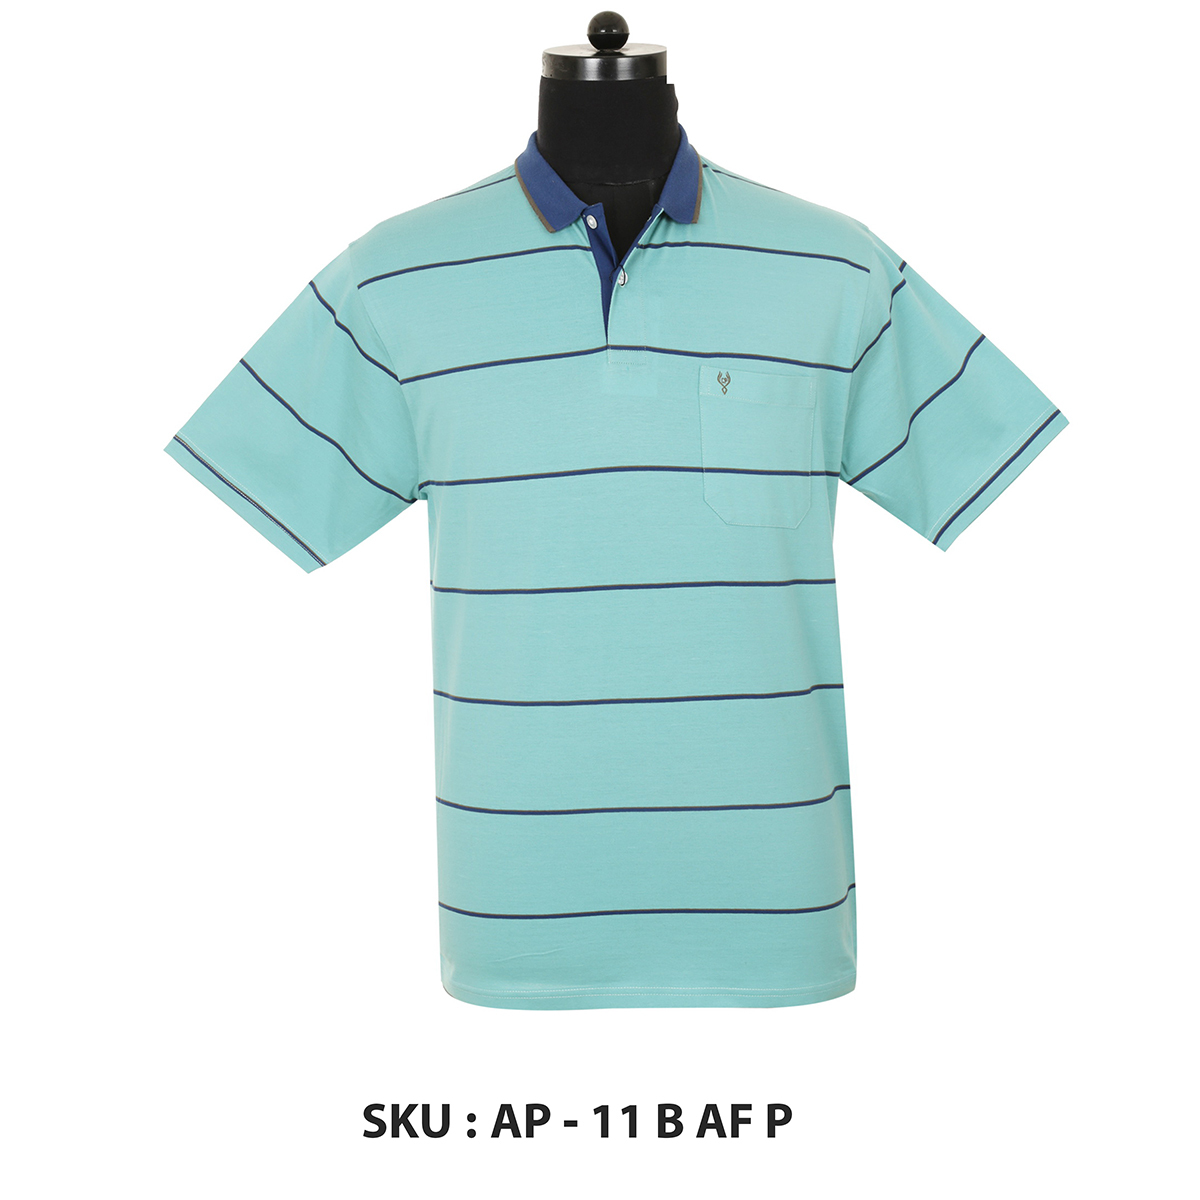 Classic Polo Mens T Shirt Ap - 11 B Af P Aqua M